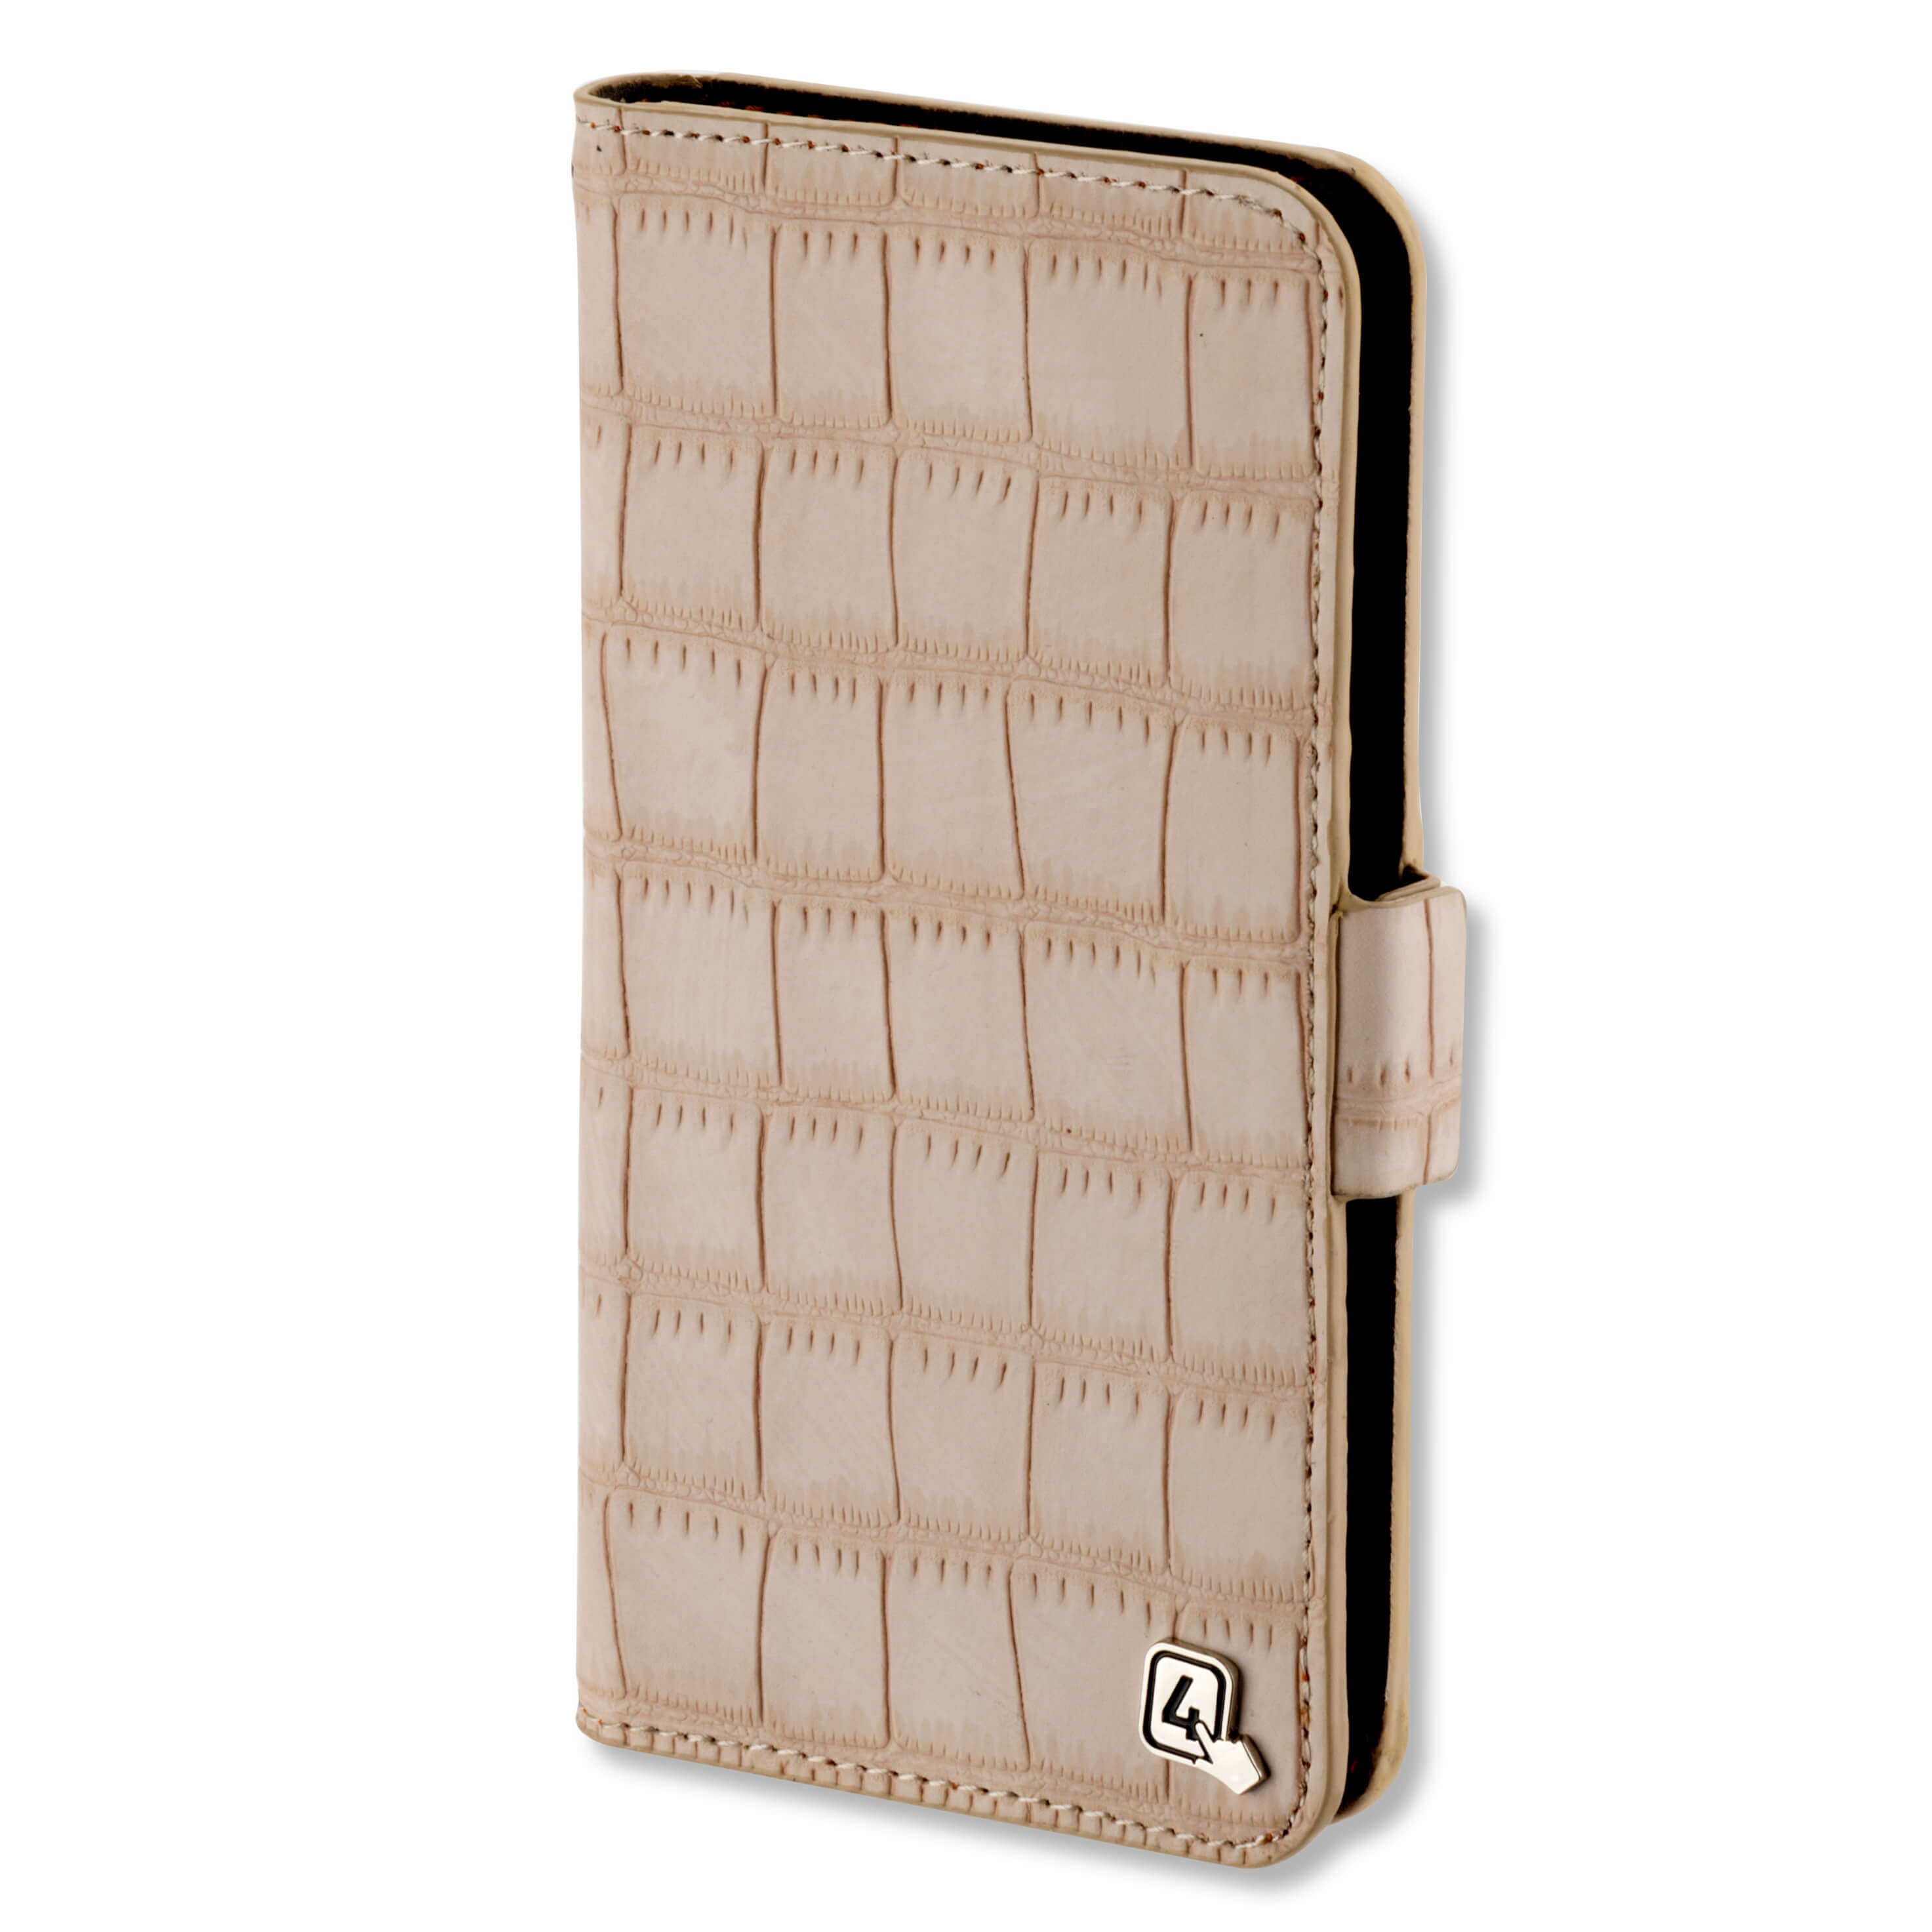 4smarts Ultimag Book Norwalk Case - универсален кожен калъф с магнитно захващане за смартфони до 5.8 инча (бежов)